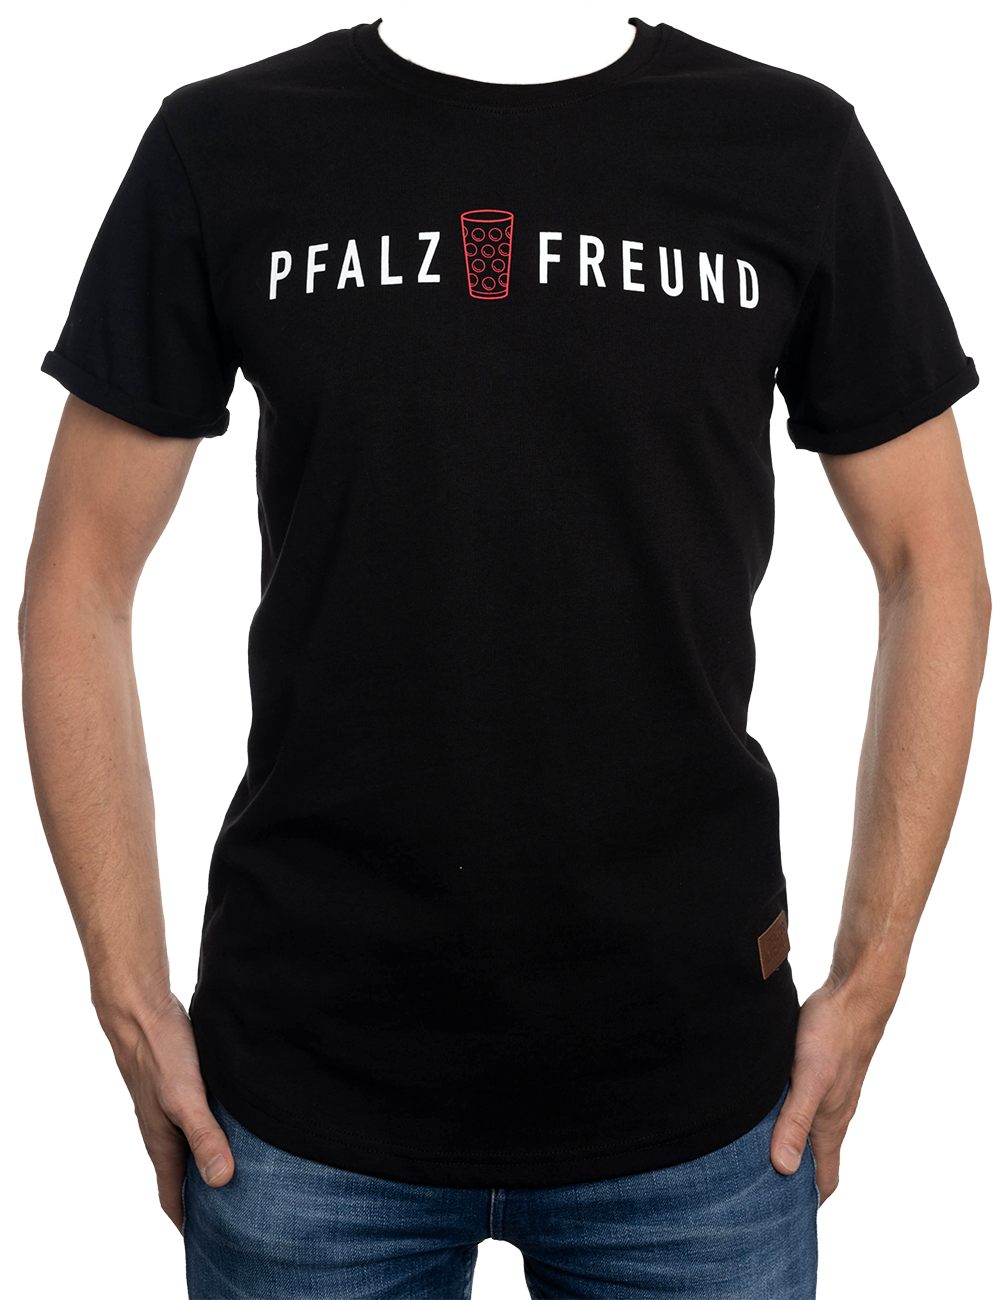 Herren T-Shirt "Pfalzfreund" - Pfälzer Freiheit